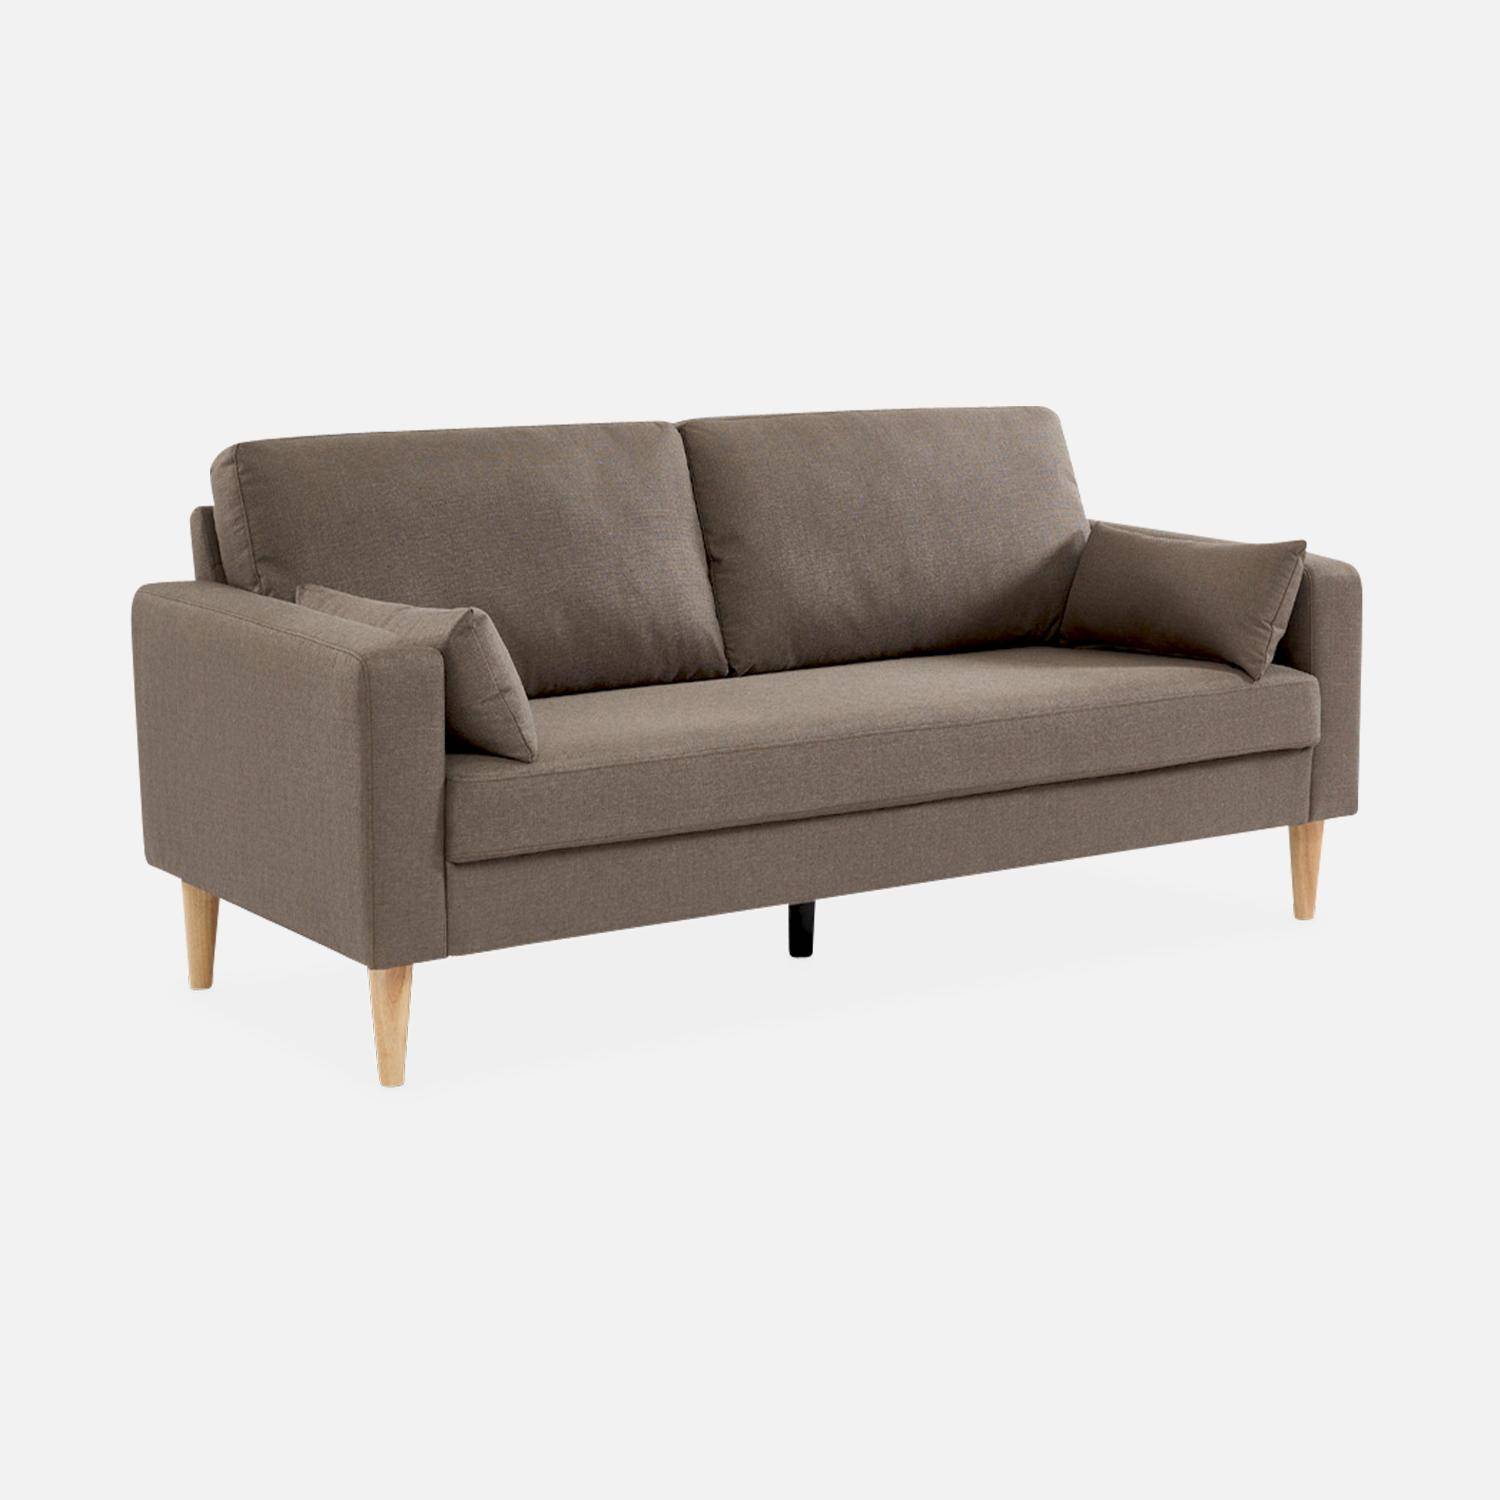 Donkergrijze stoffen driezits sofa - Bjorn - 3-zits bank met houten poten, scandinavische stijl  ,sweeek,Photo2